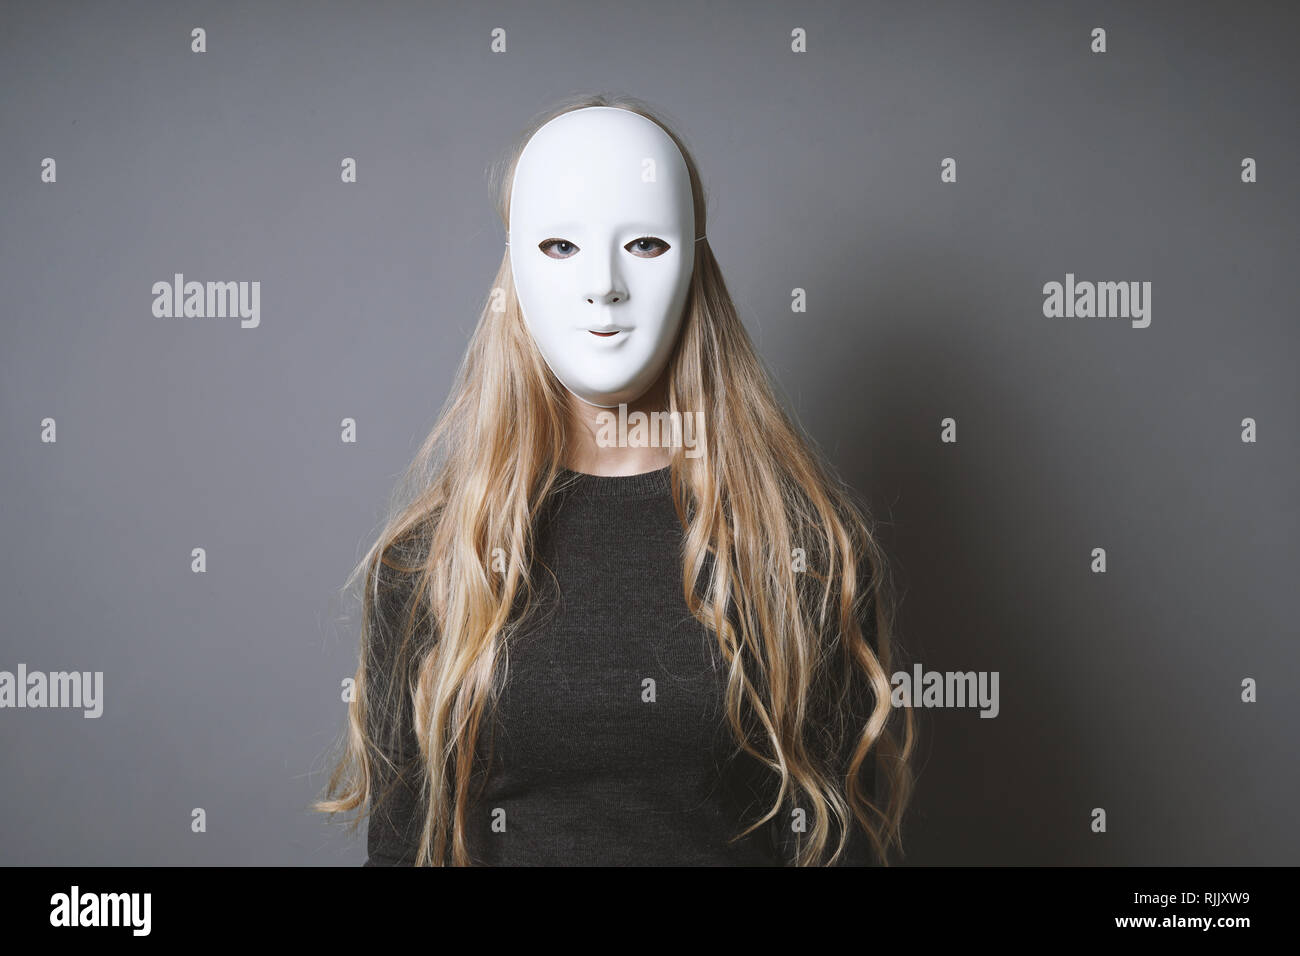 Geheimnisvolle Frau verstecken Gesicht und Identität hinter der Maske Stockfoto